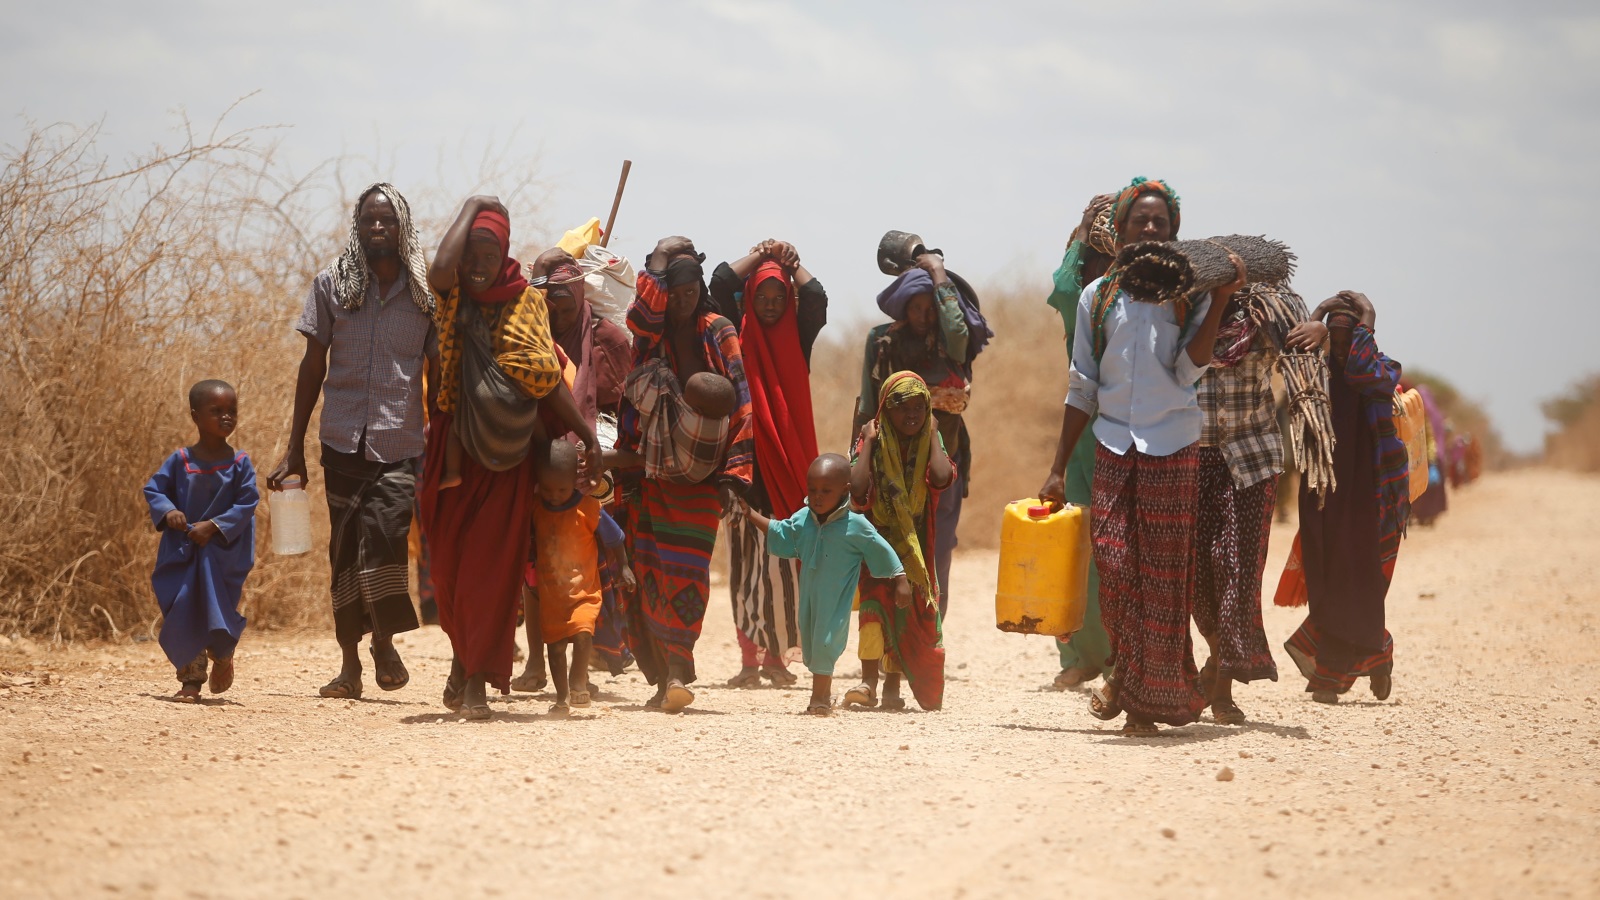 المرأة الصومالية تعتبر مهمشة في التاريخ والدراسات لذلك تسعى هذه المقاربة بإعادة النظر في الأبوية التي تهمش دور المرأة أو تفرض عليها قيود يمنعها من المشاركة في صنع القرار